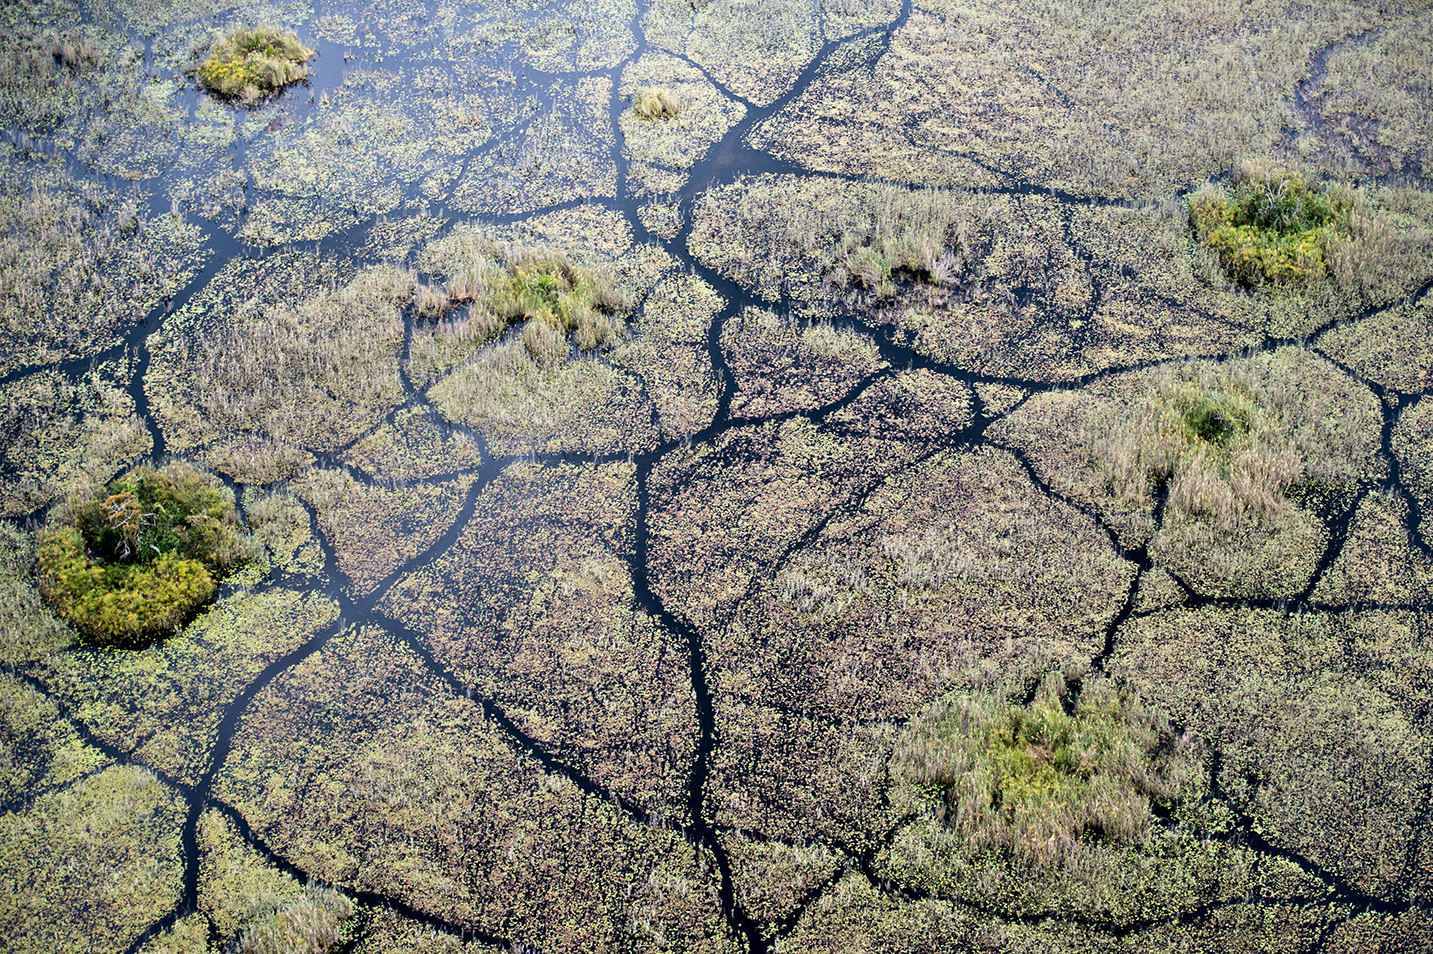 Vumbura Plains in the Okavango Delta, Botswana